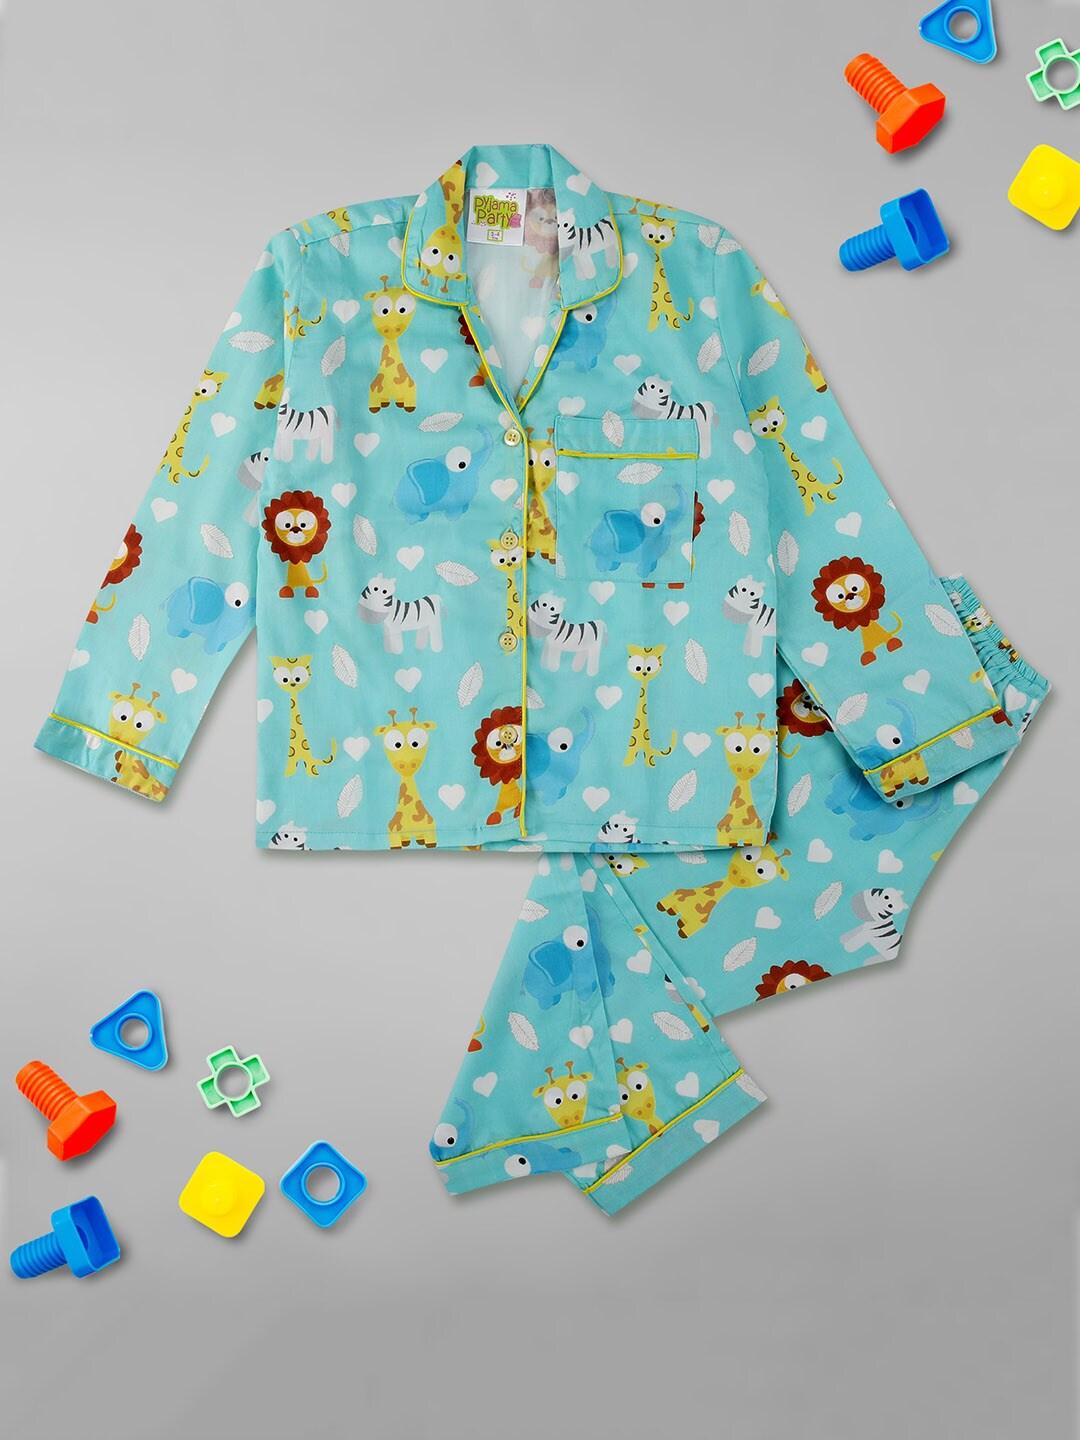 Pyjama Party Unisex Kids Blue & Yellow Printed Night suit